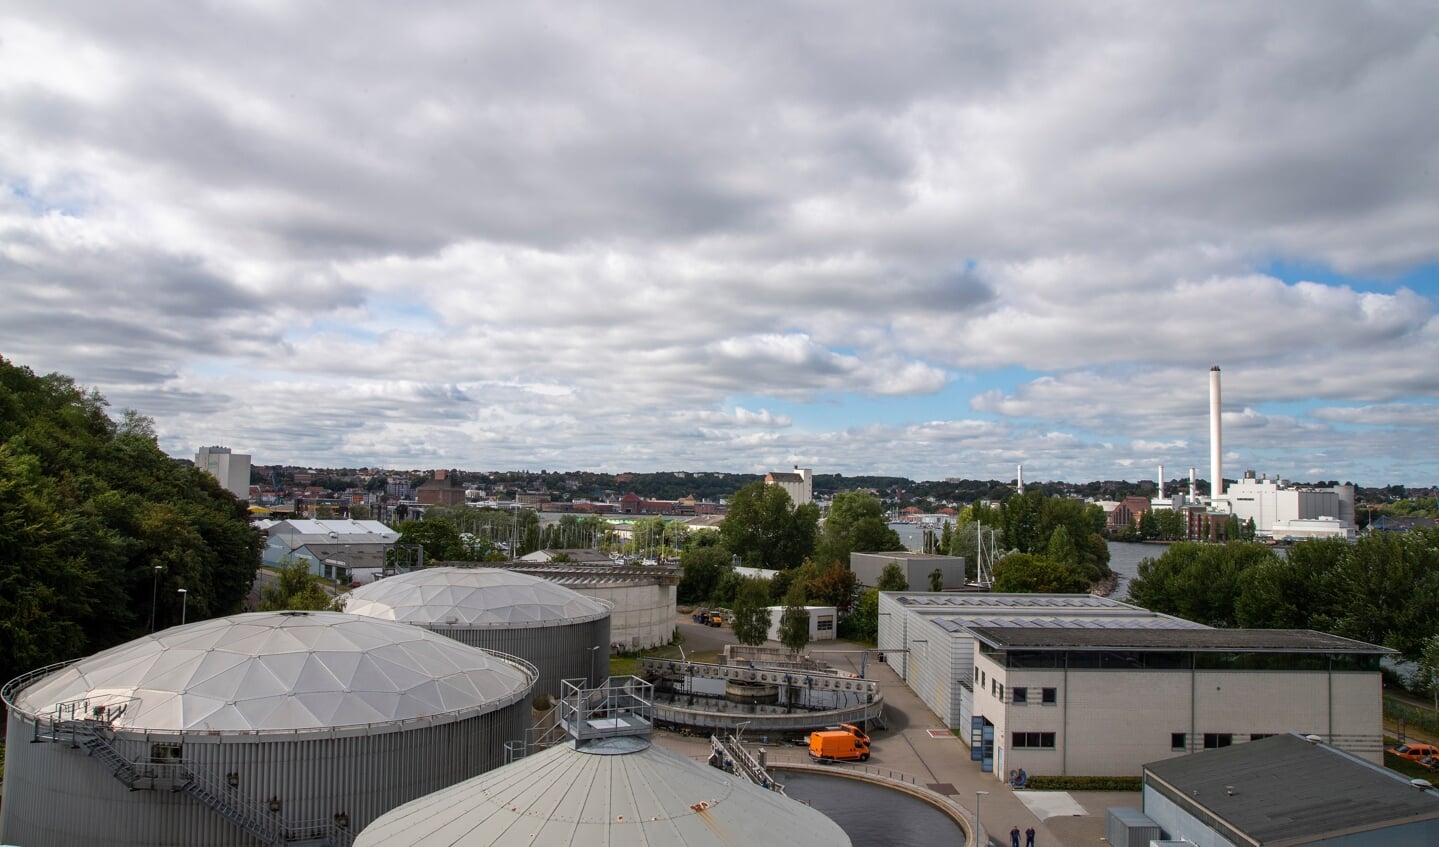 Et blik over rensningsanlægget i Flensborg. I baggrunden til højre skimtes Stadtwerke, som kan være en interessant samarbejdspartner i bestræbelserne på at forbedre miljøet i Flensborg Fjord. Foto: